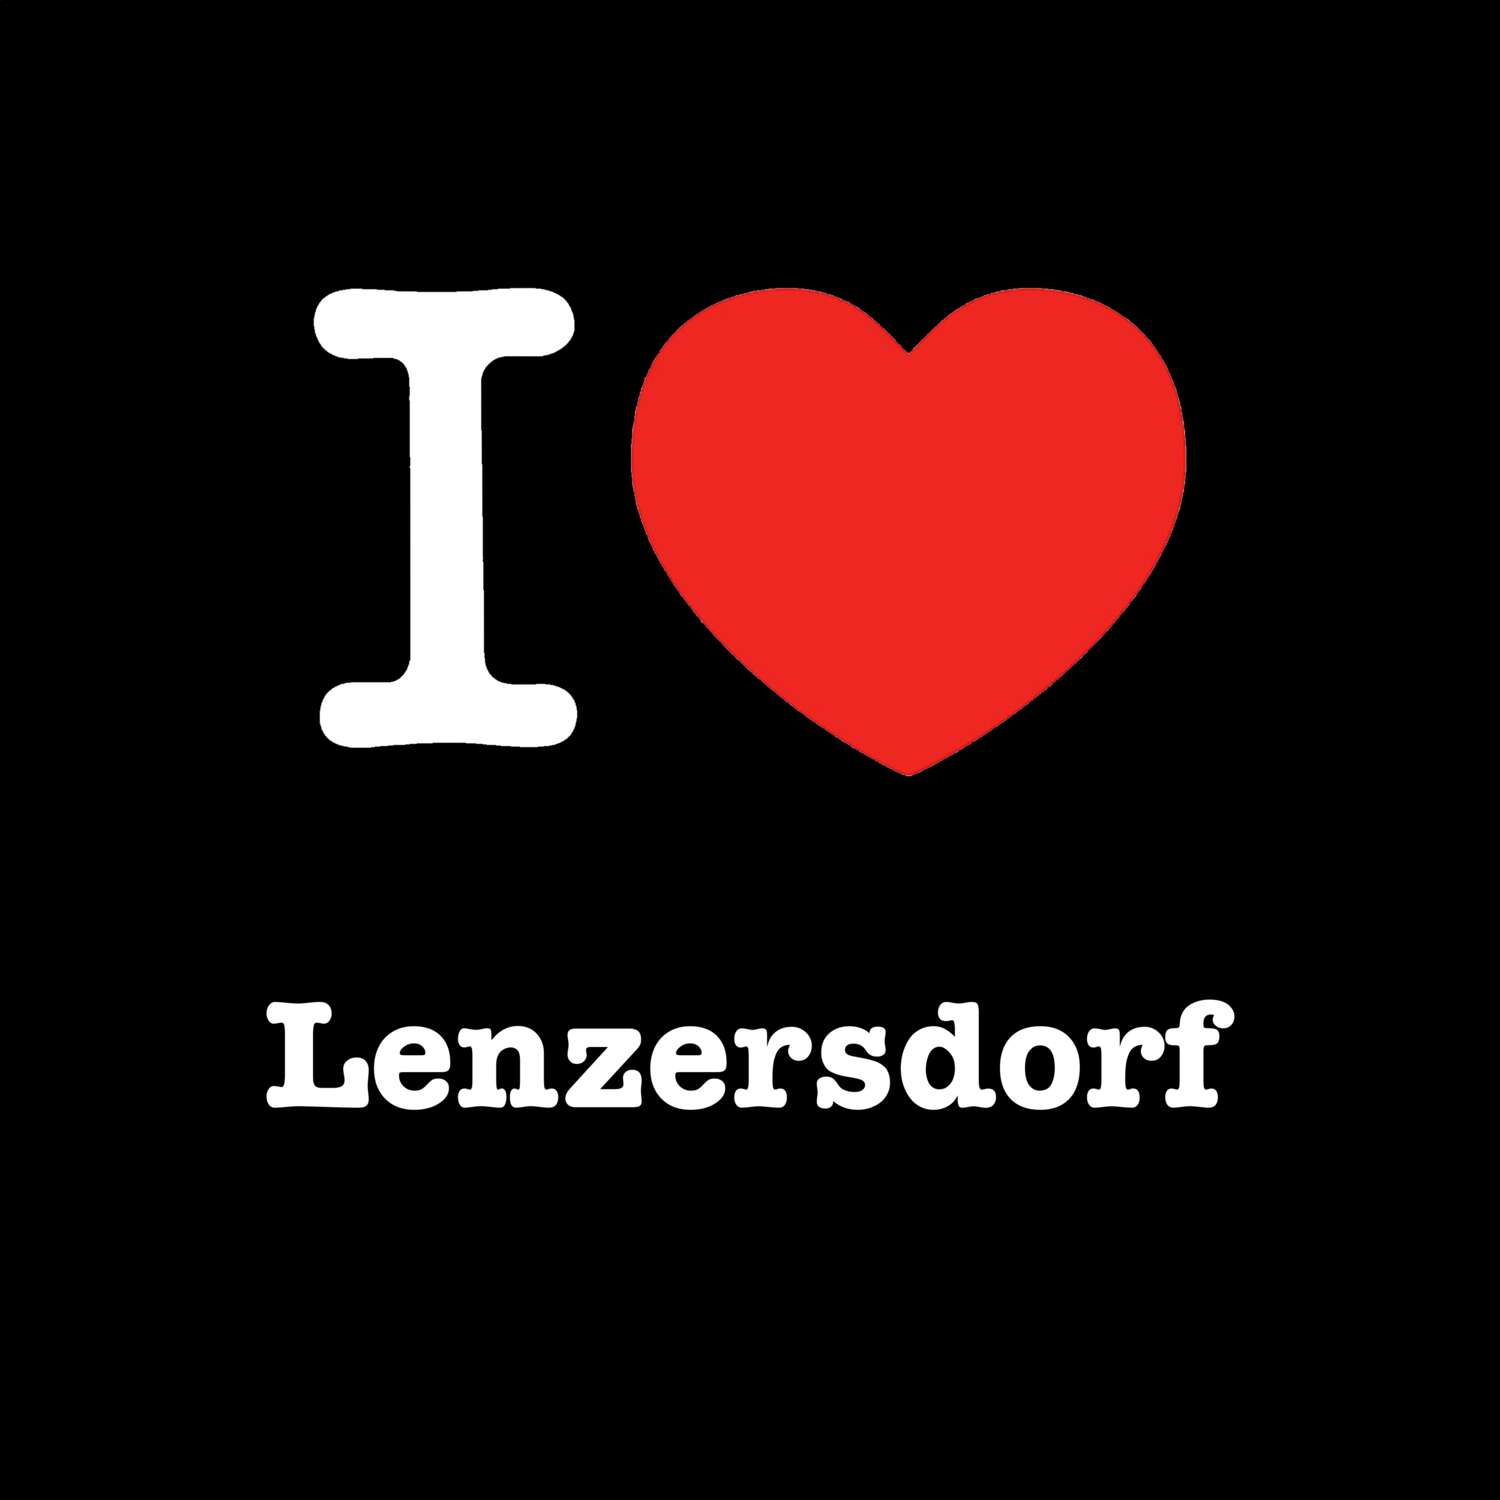 Lenzersdorf T-Shirt »I love«